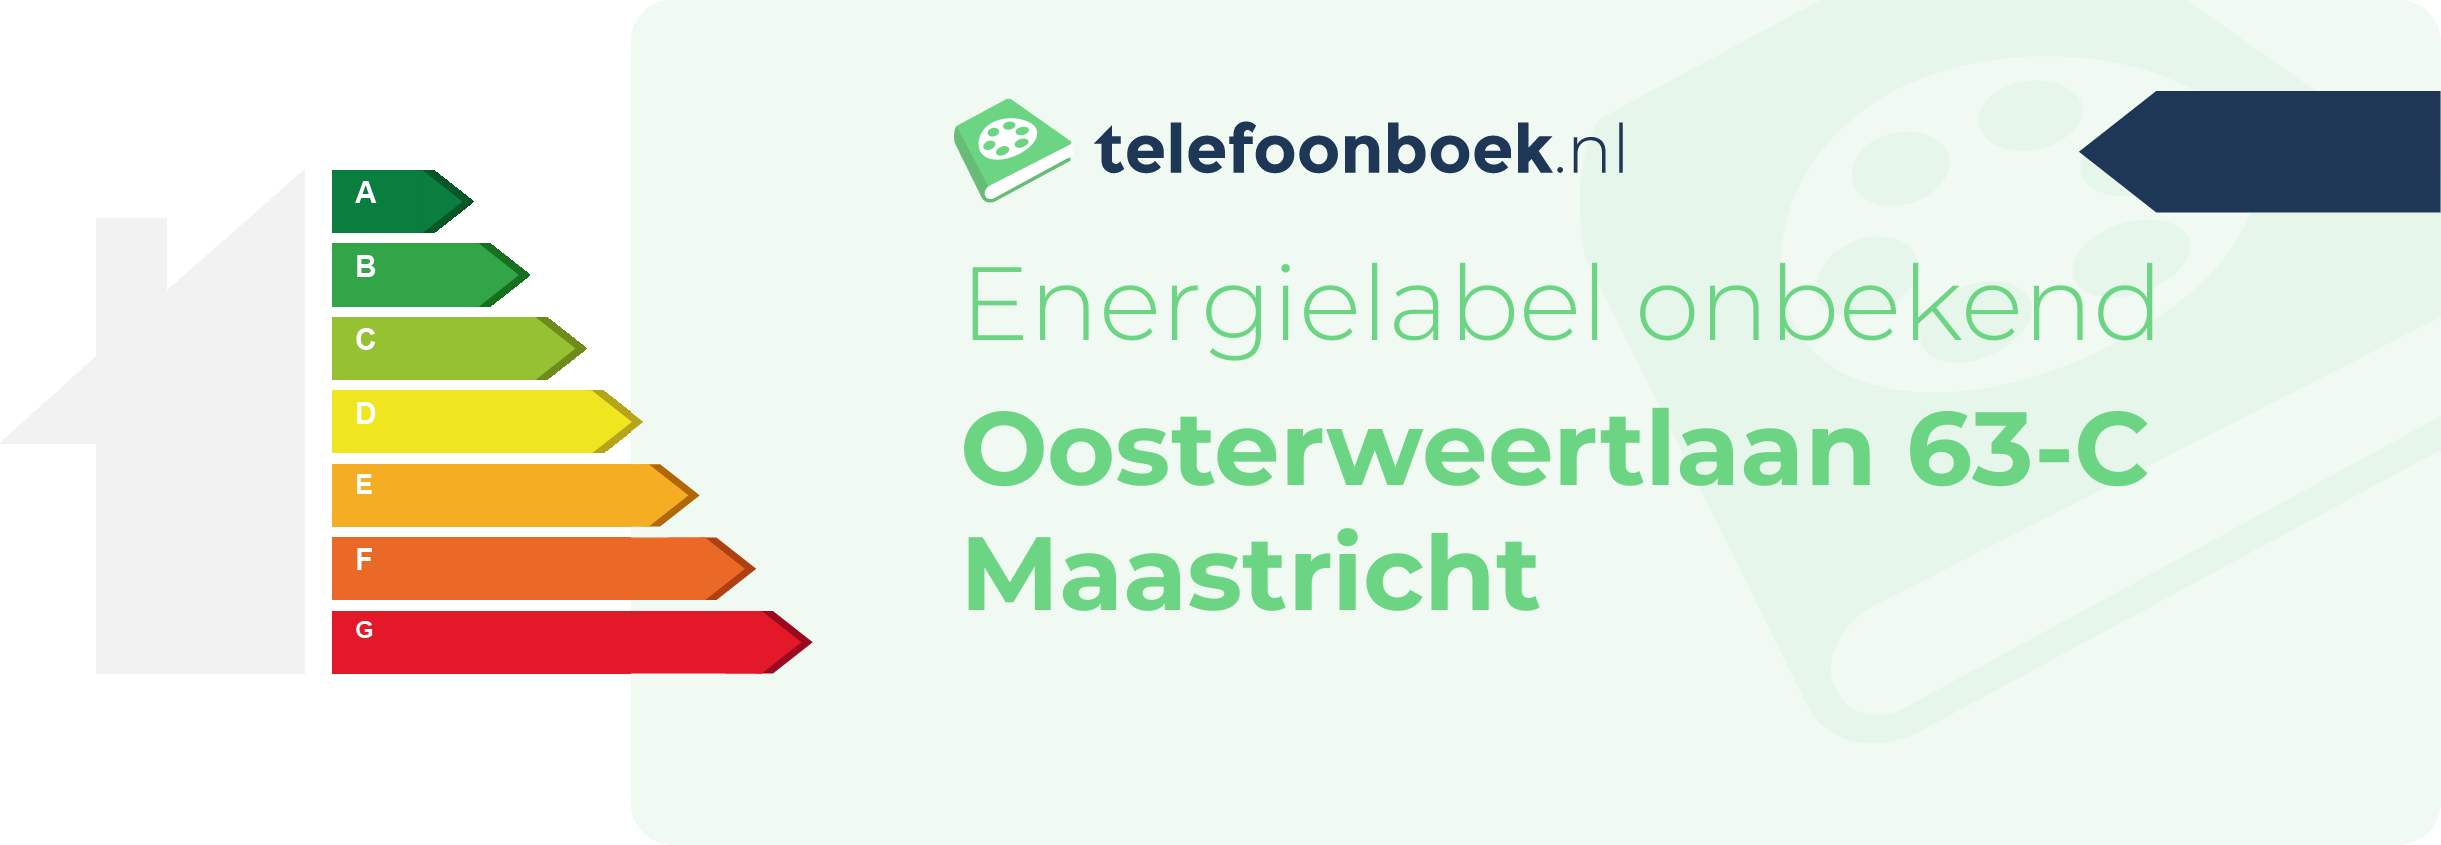 Energielabel Oosterweertlaan 63-C Maastricht